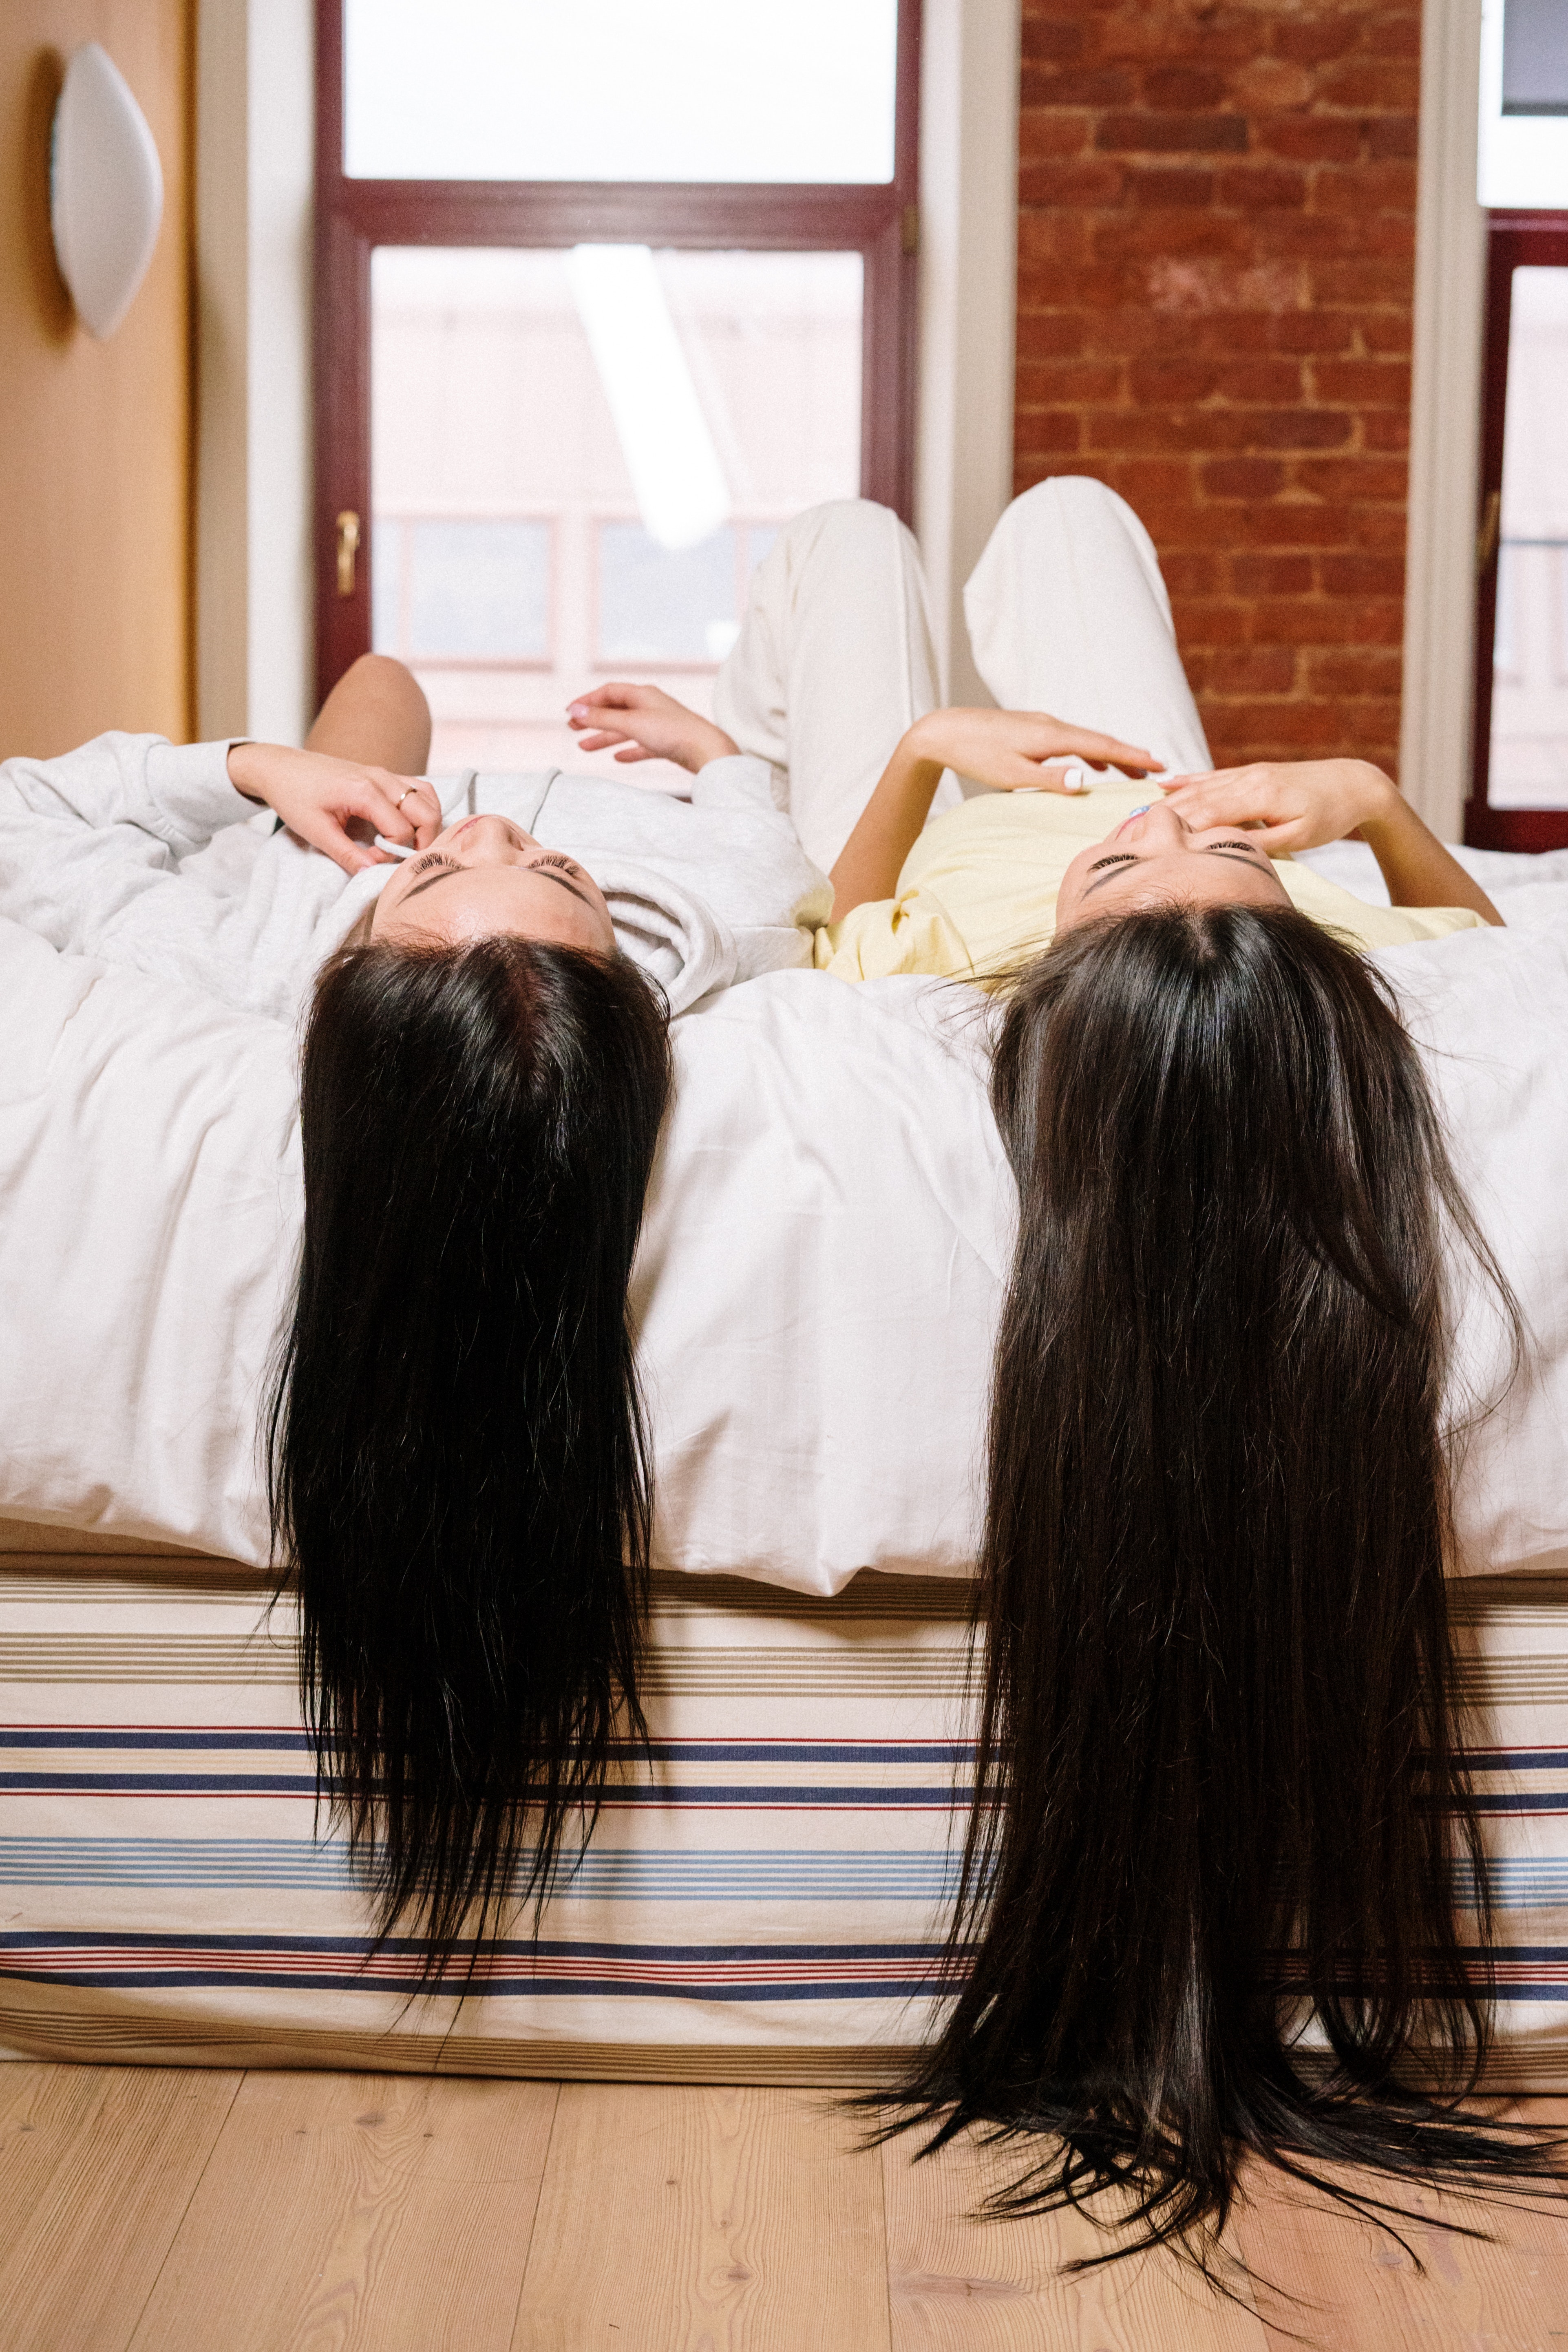 La femme allongée sur un lit avec leurs cheveux qui pendent du lit | Source : Pexels